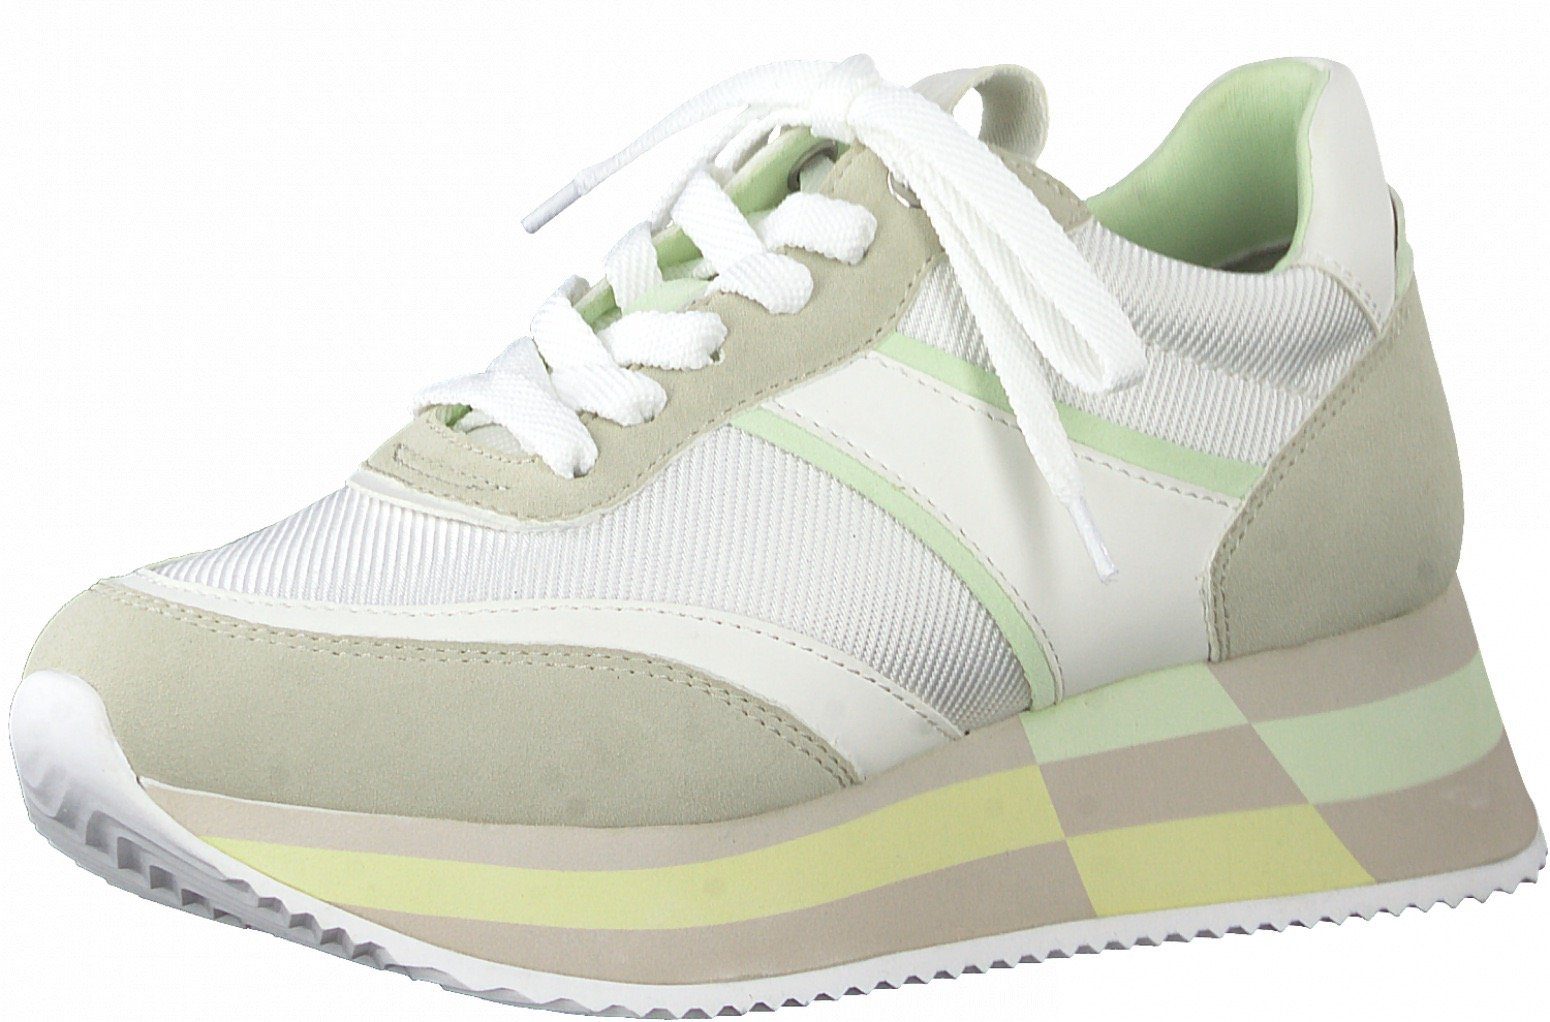 Damen Sneaker in grün online kaufen | OTTO